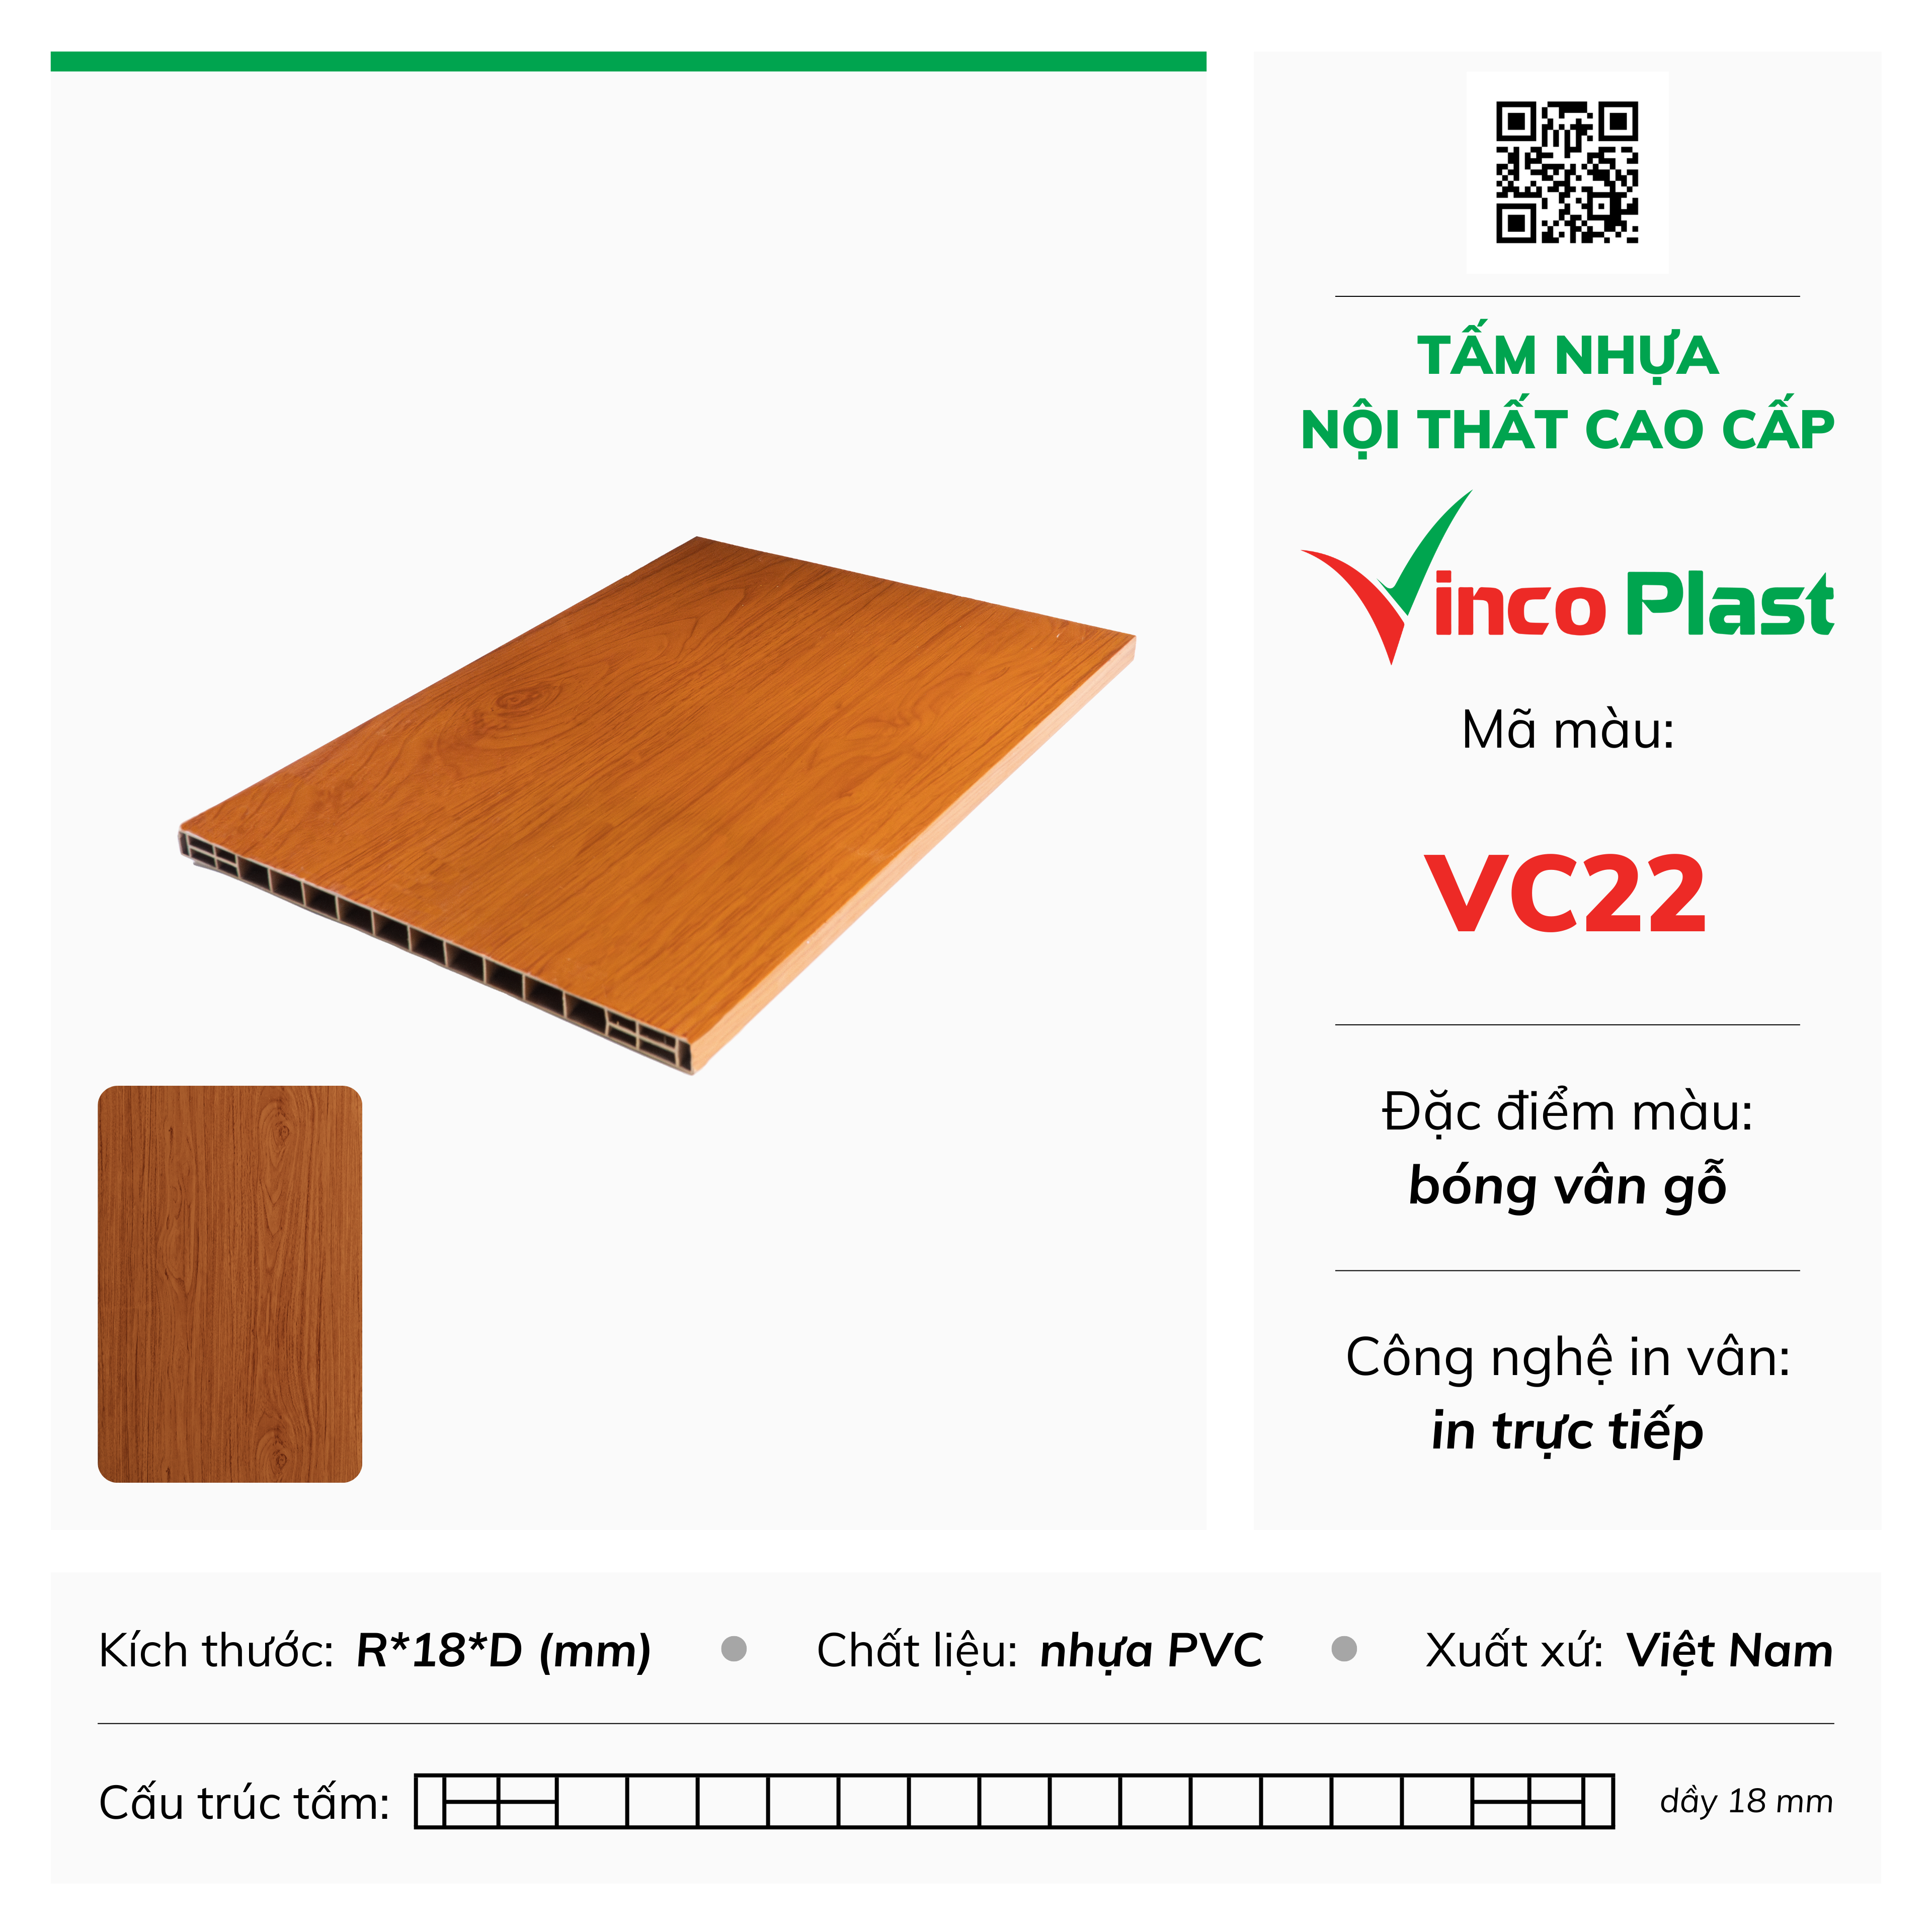 Tấm nhựa nội thất cao cấp Vincoplast màu vc22